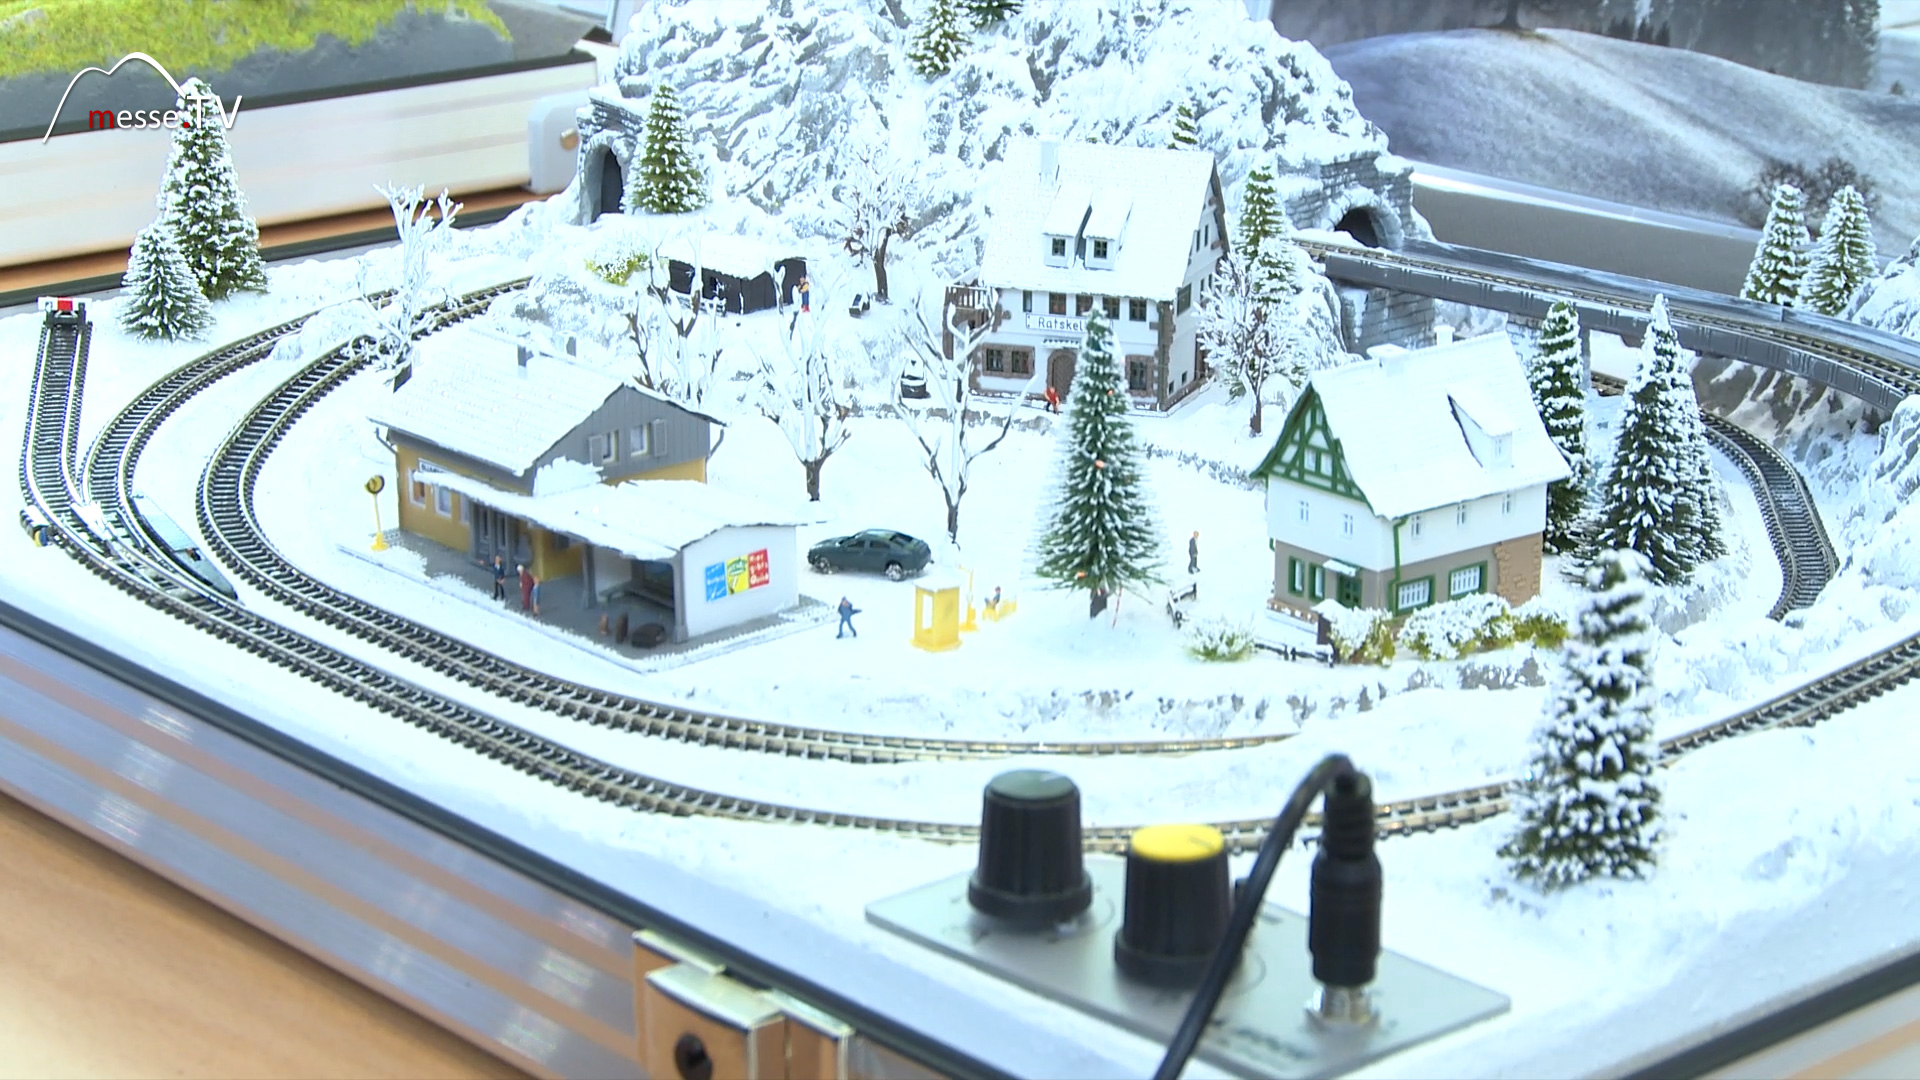 model train NOCH winter landscape